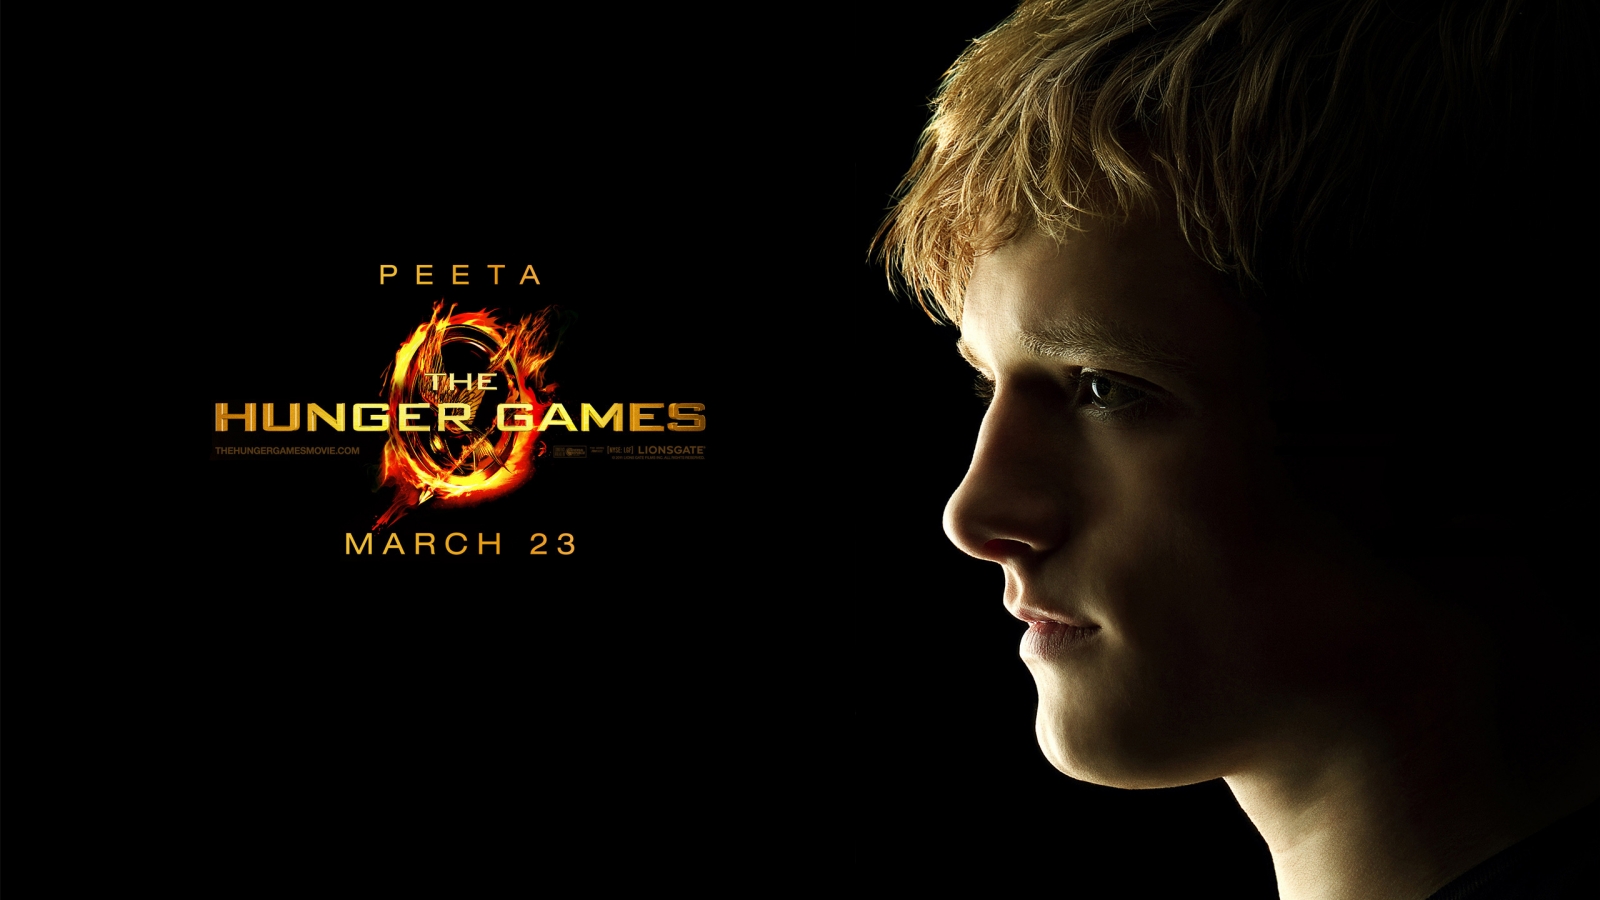 The Hunger Games Peeta for 1600 x 900 HDTV resolution